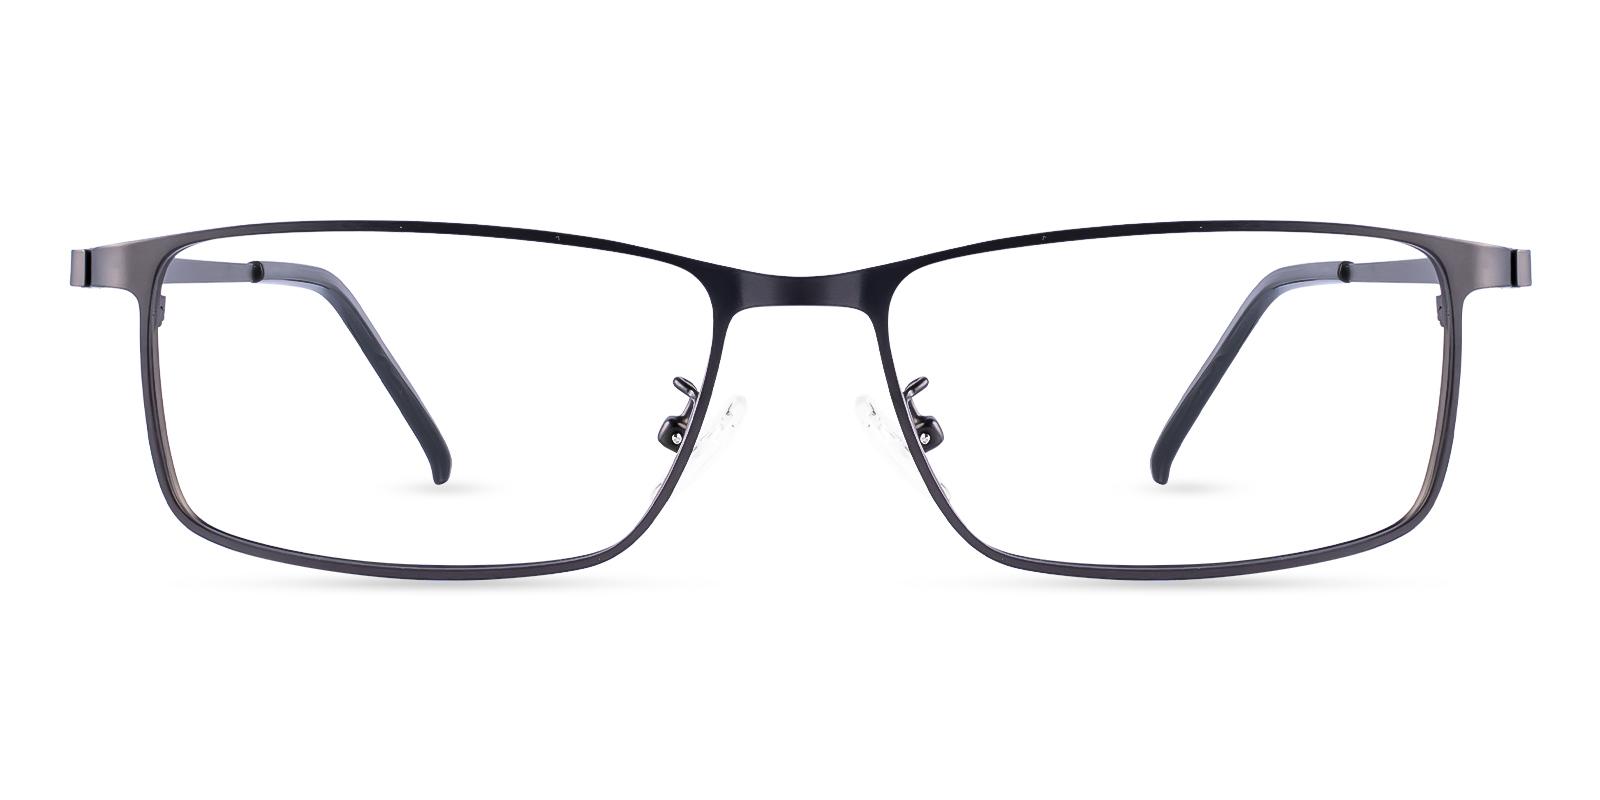 Daniel Gun Metal Eyeglasses , NosePads Frames from ABBE Glasses